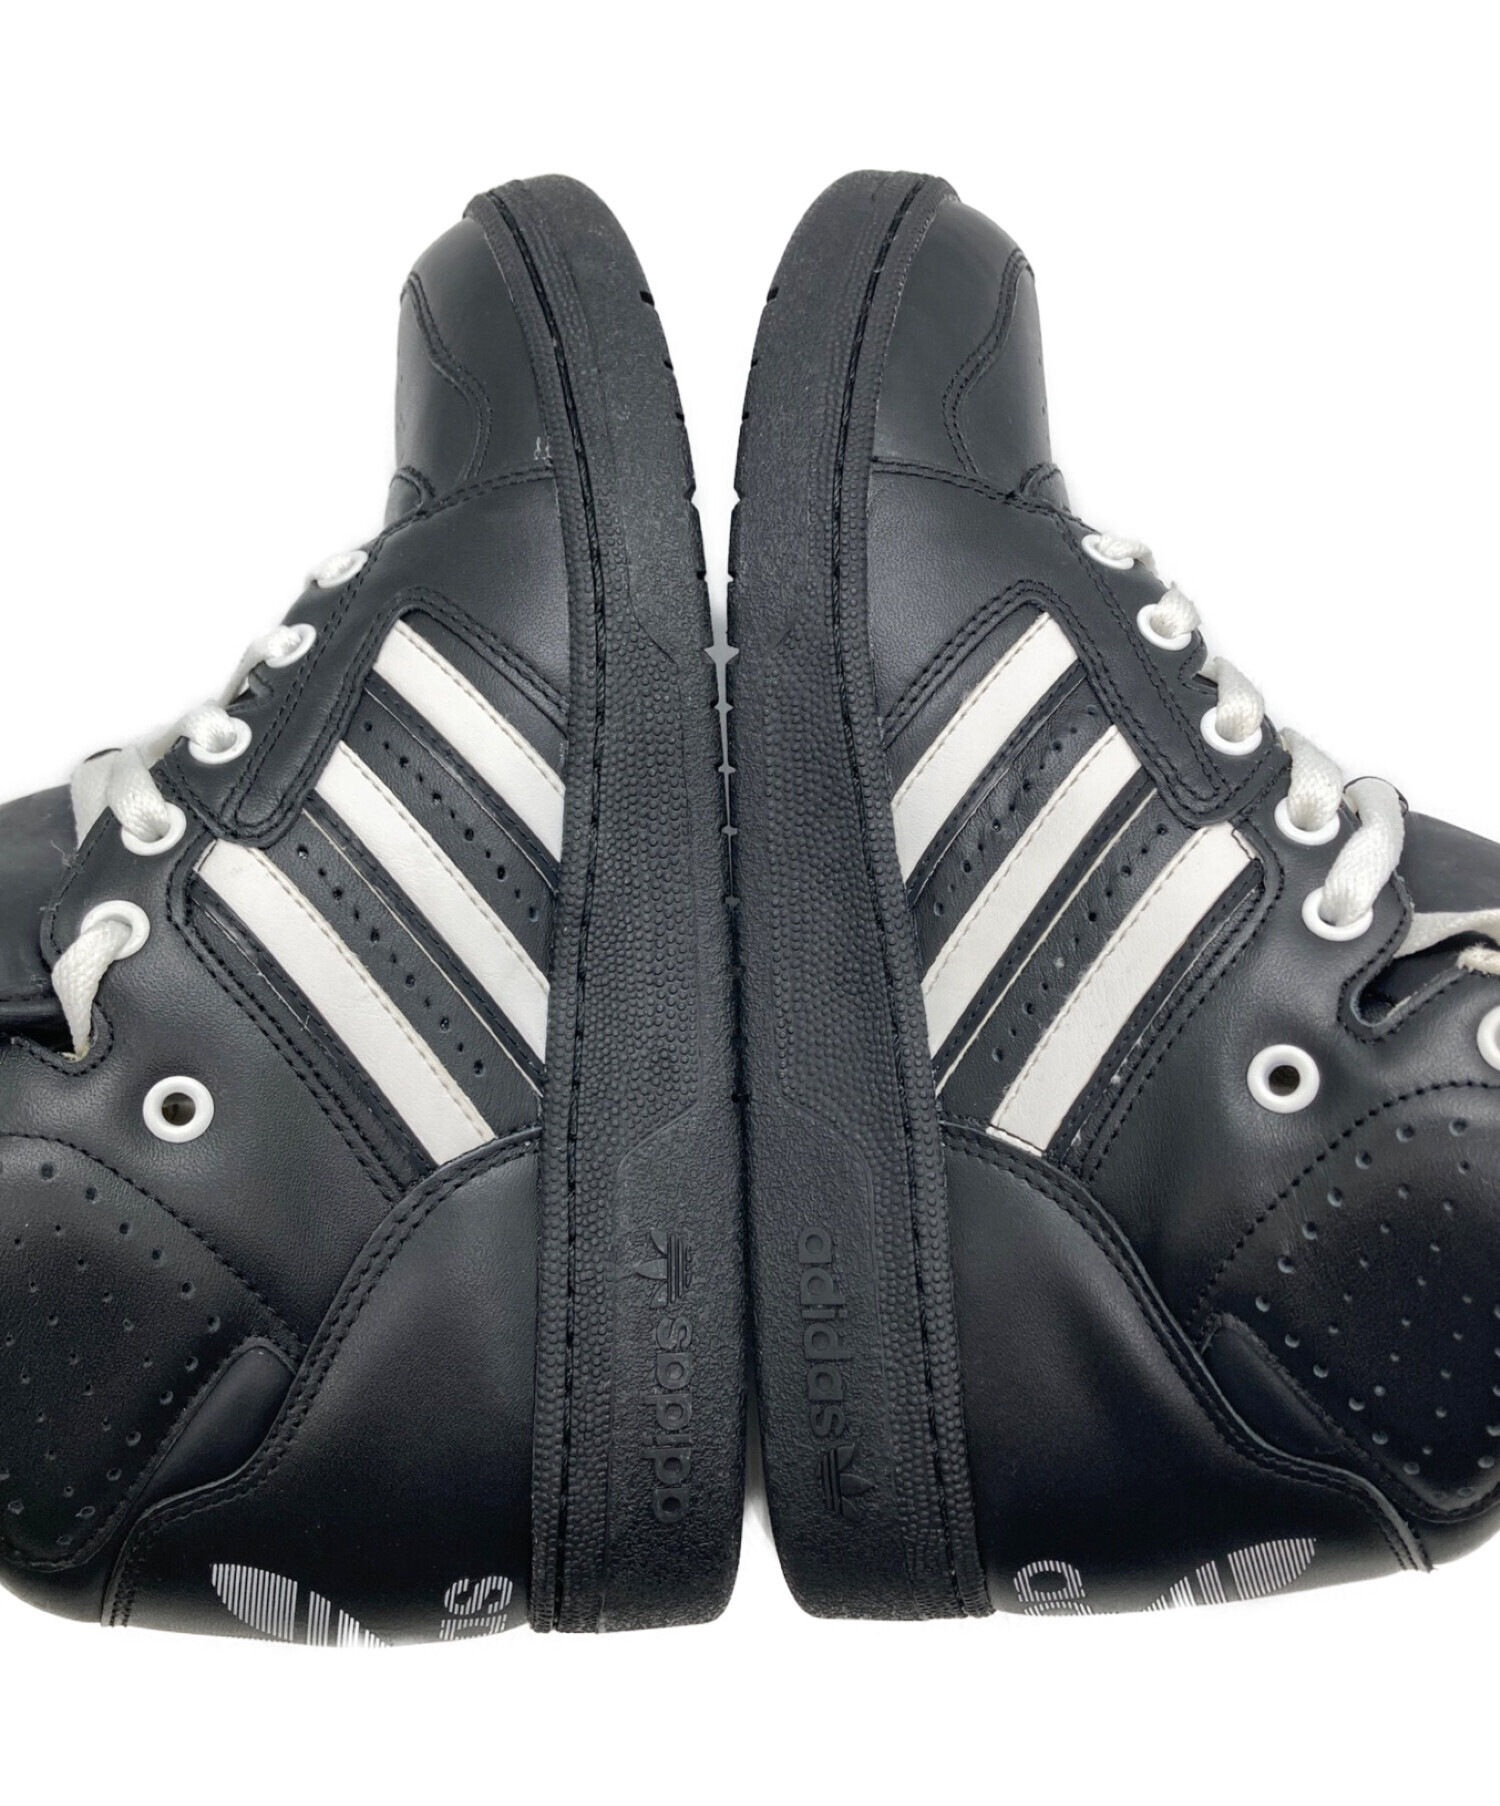 adidas (アディダス) JEREMY SCOTT (ジェレミースコット) INSTINCT HI ブラック×ホワイト サイズ:25.5cm